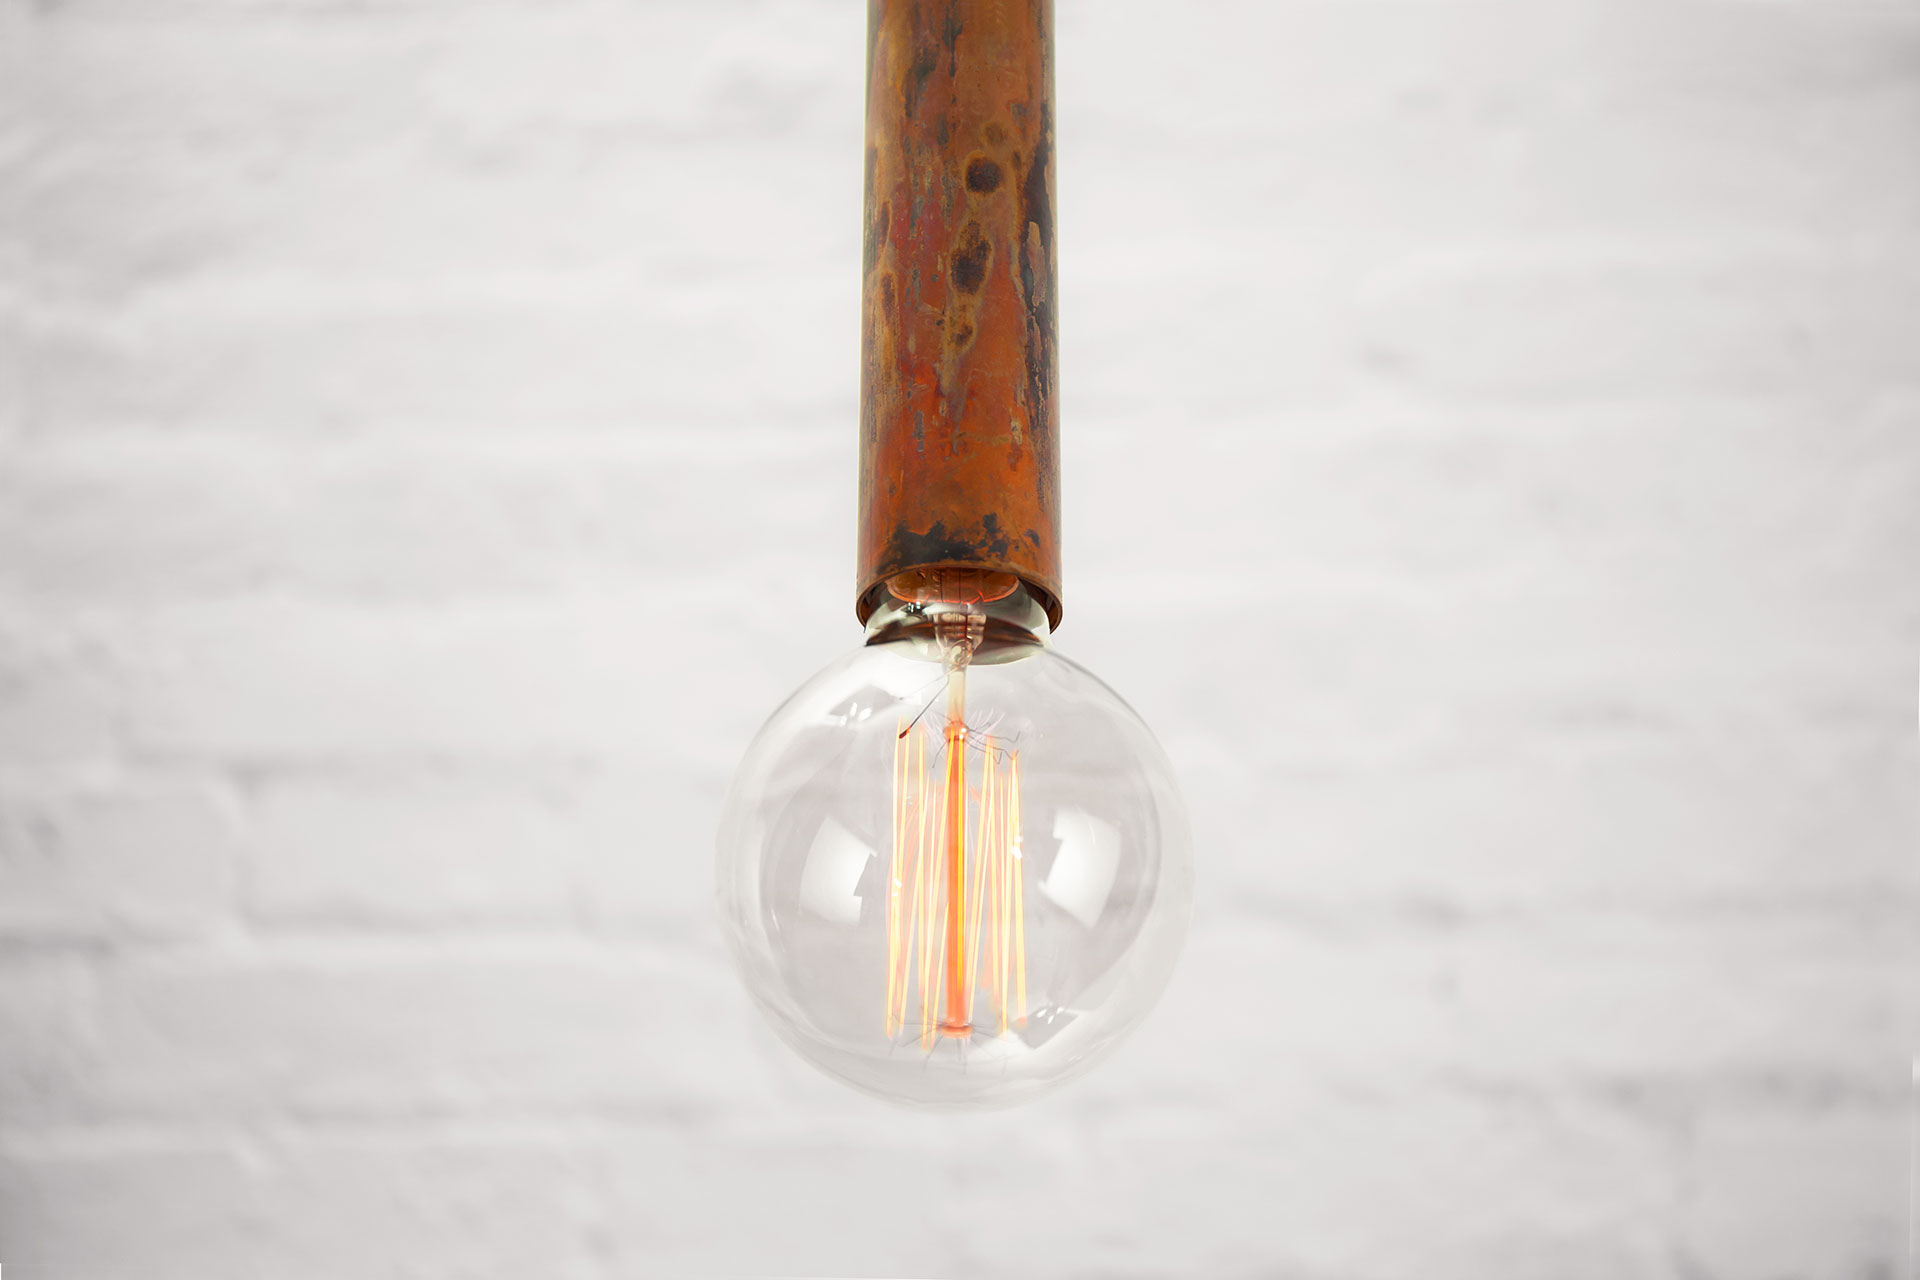 Designer pendant lamp in rust copper metal finish